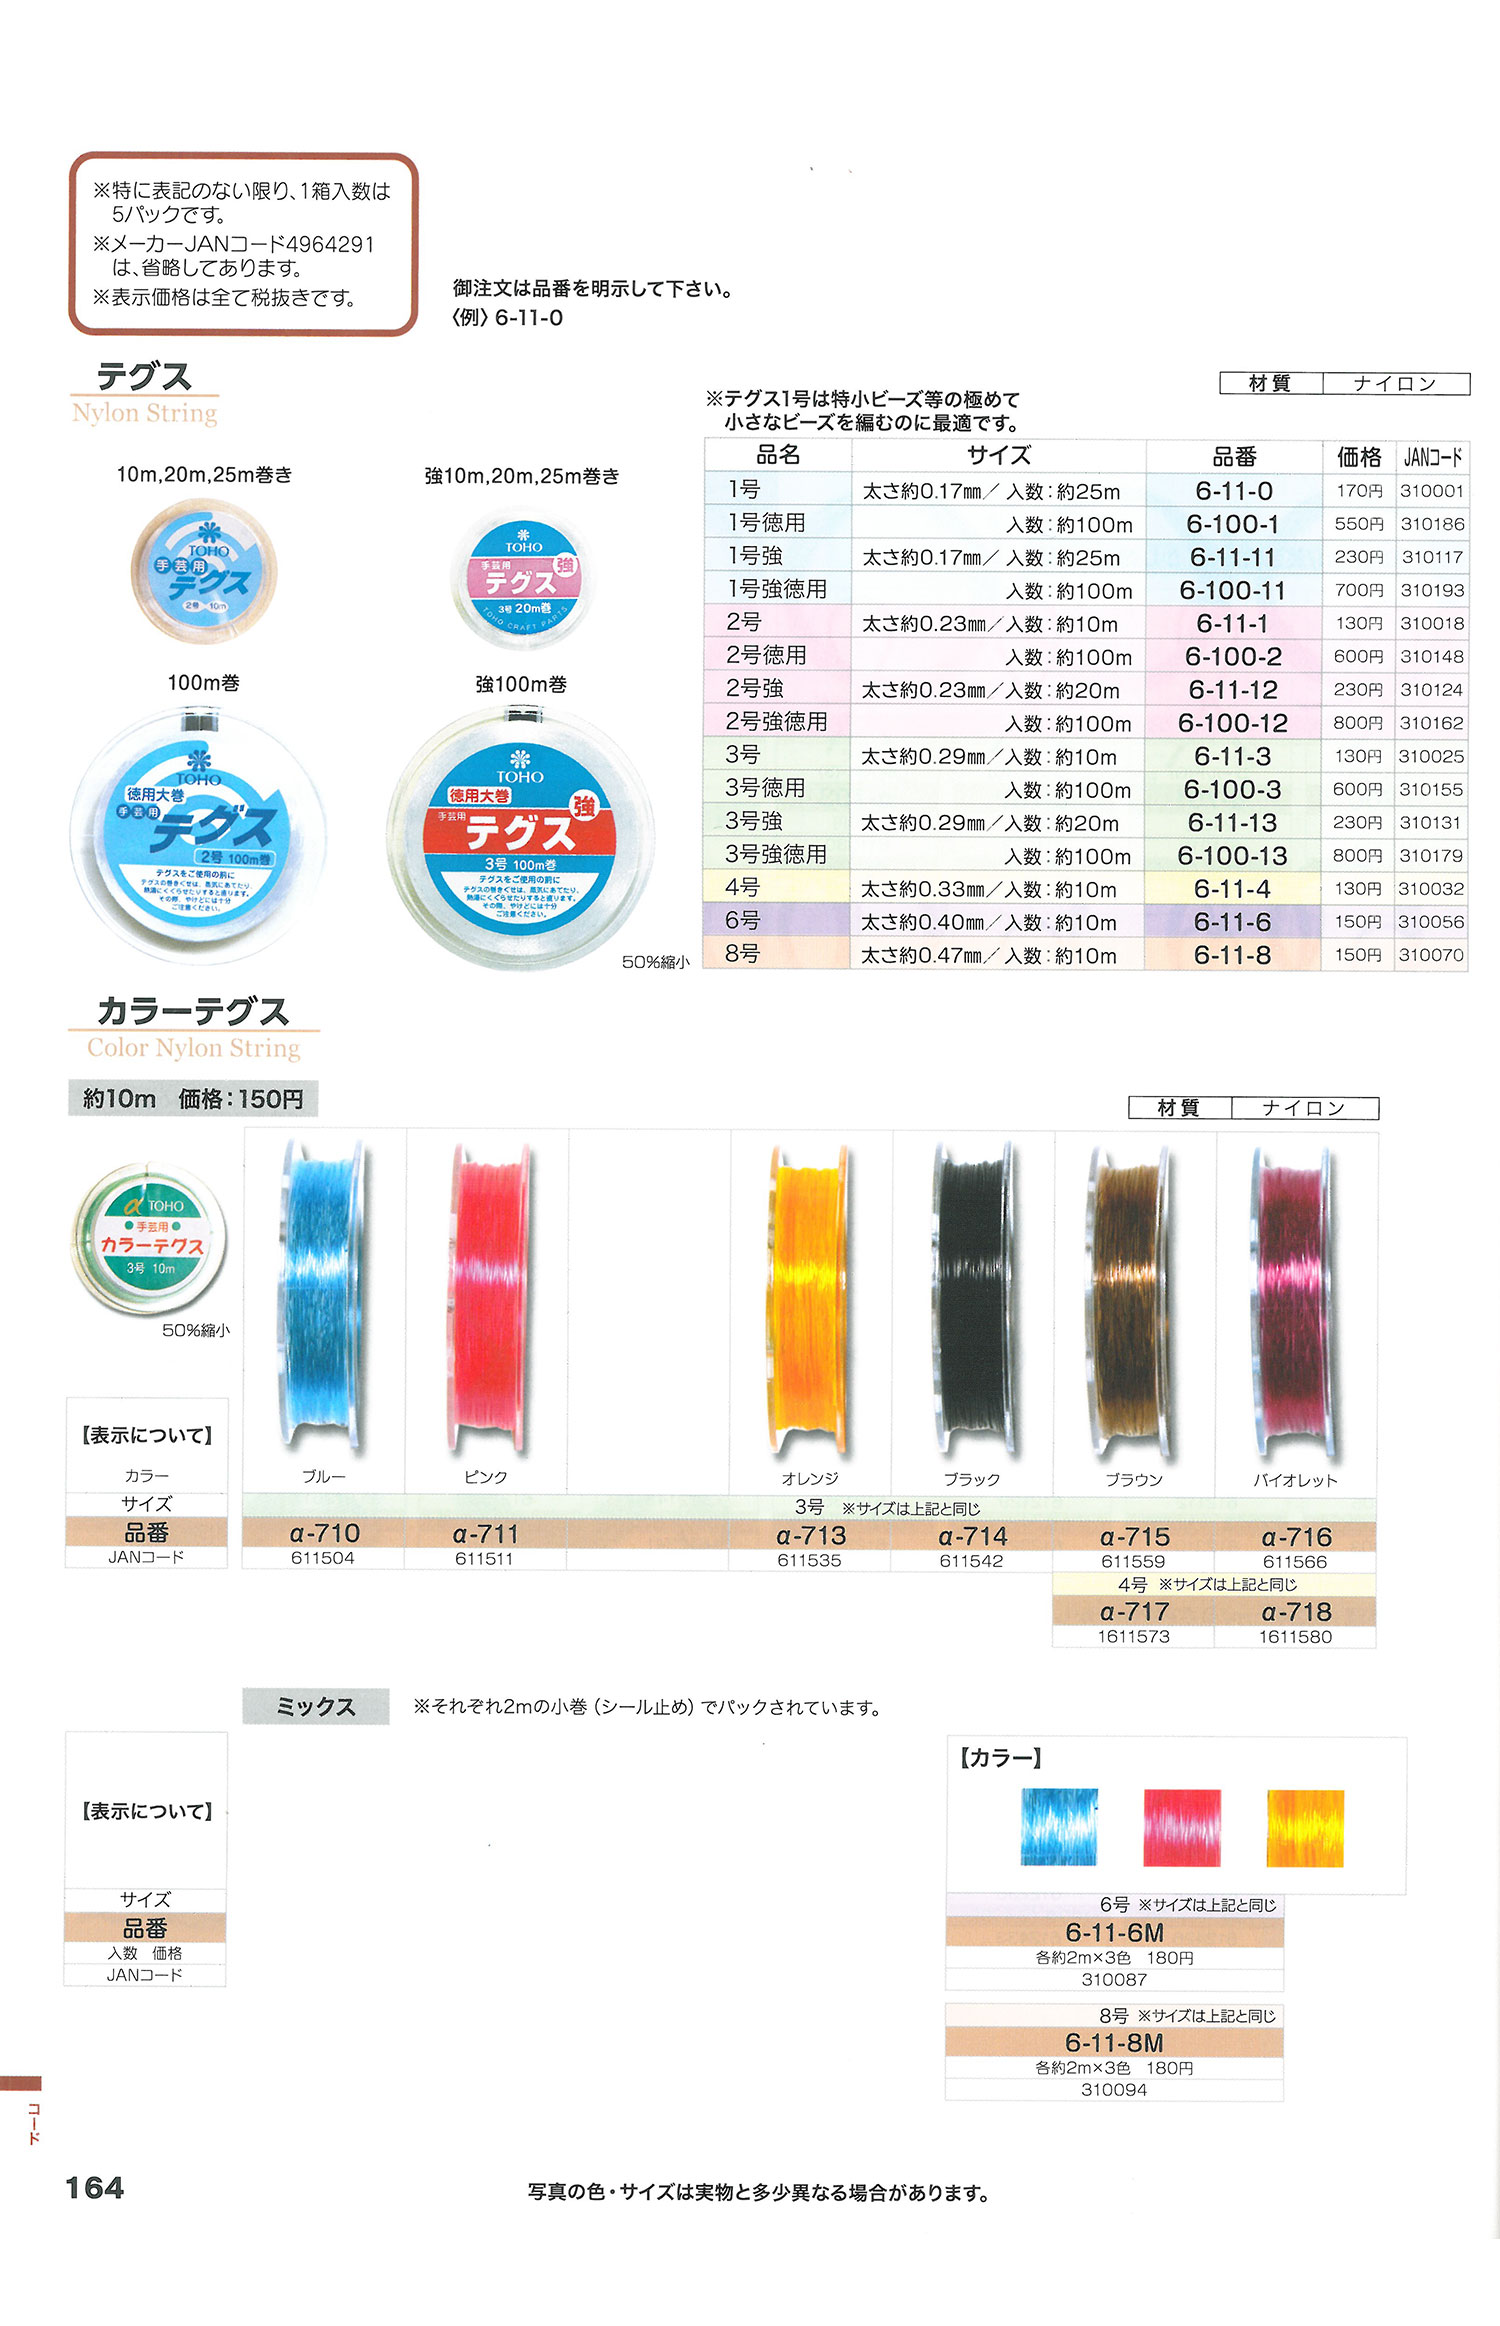 テグス Nylon Fishing Line[Miscellaneous Goods And Others] TOHO BEADS/Okura  Shoji Co., Ltd. - ApparelX